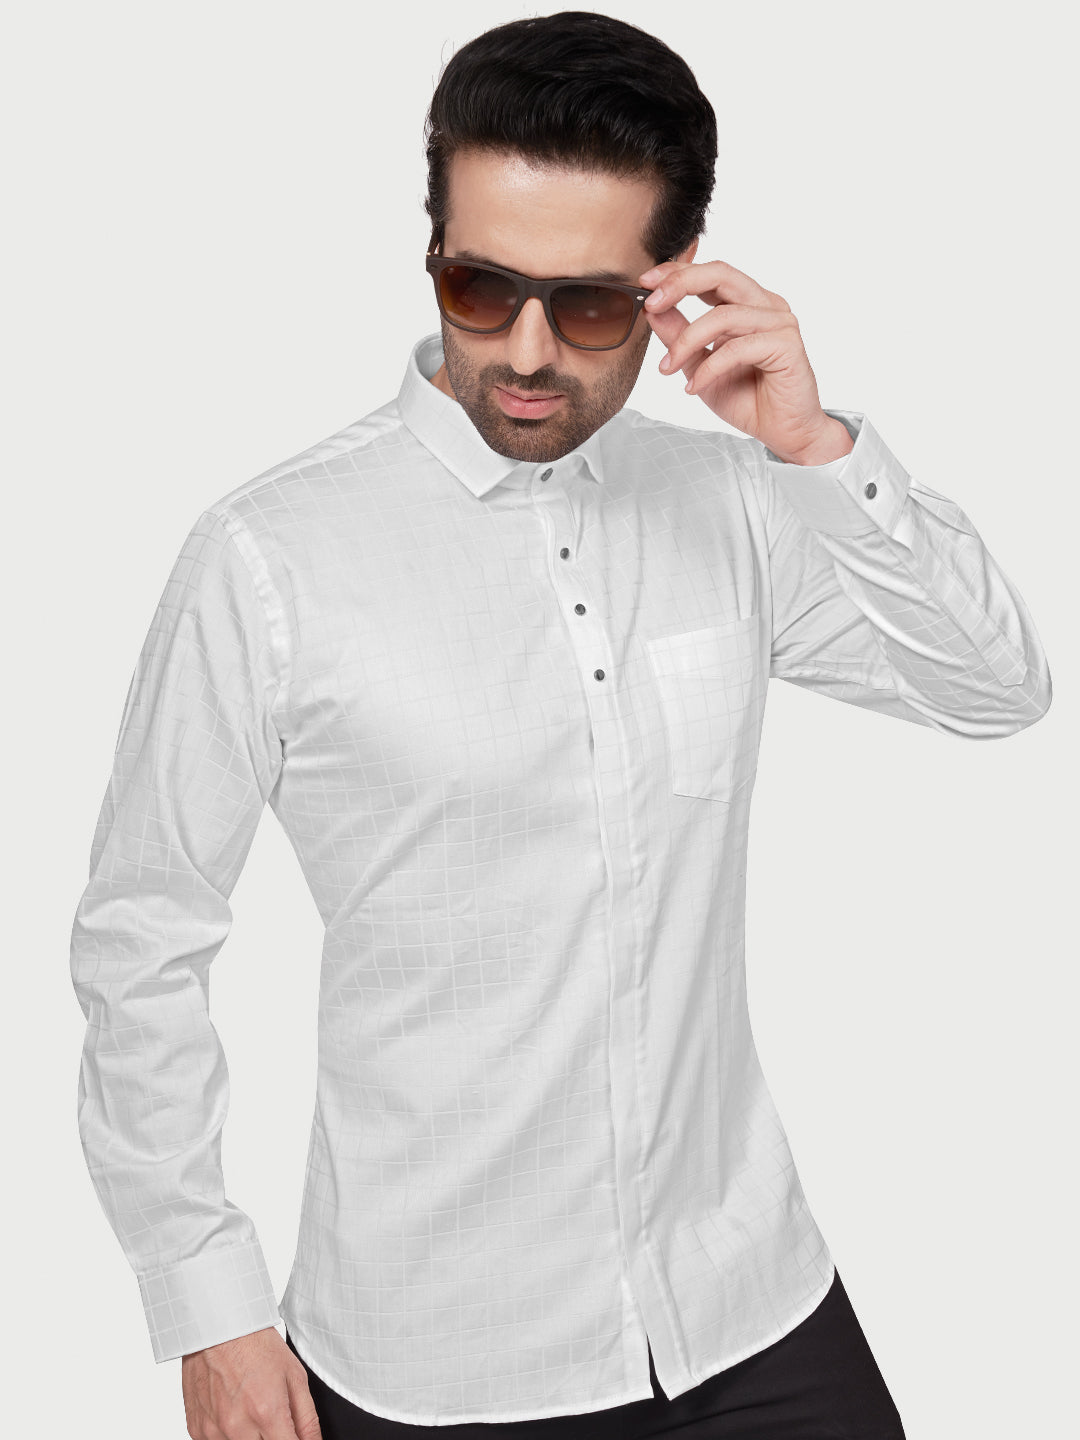 Black & White Designer Shimmer Shirt White